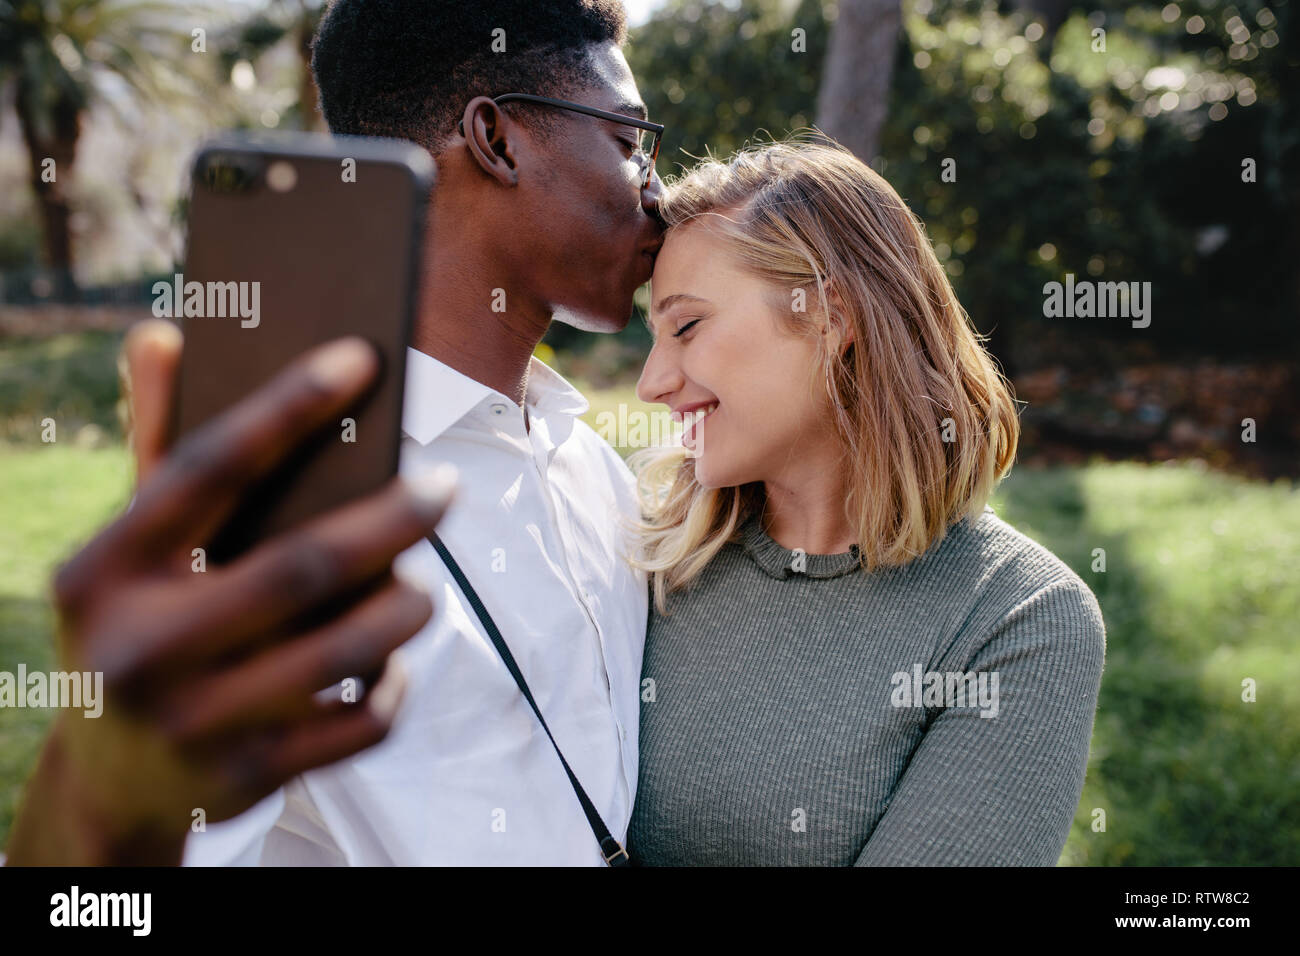 Amare giovane tenendo selfie con smart phone all'esterno. L'uomo baciare sulla fronte della sua fidanzata mentre sta assumendo il ritratto di auto. Foto Stock